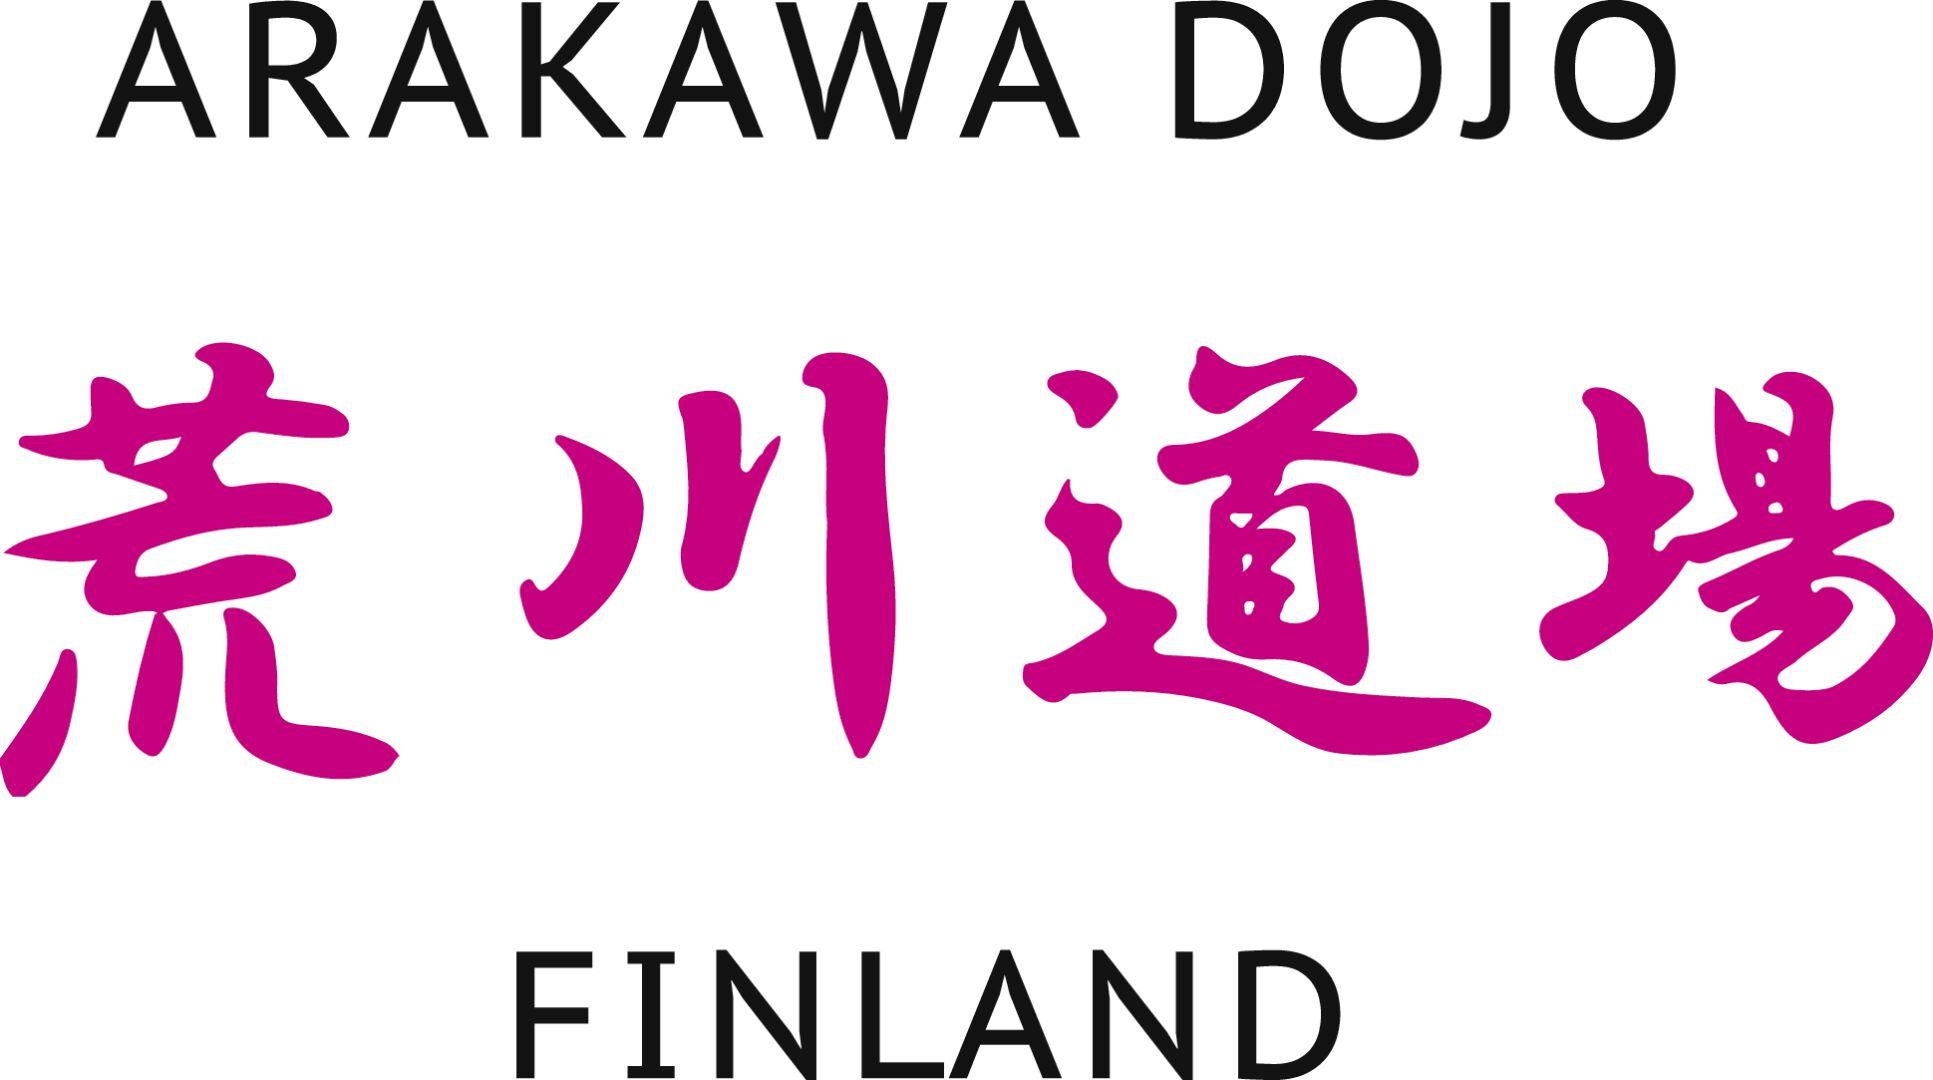 ARAKAWA DOJO FINLAND seuran logo